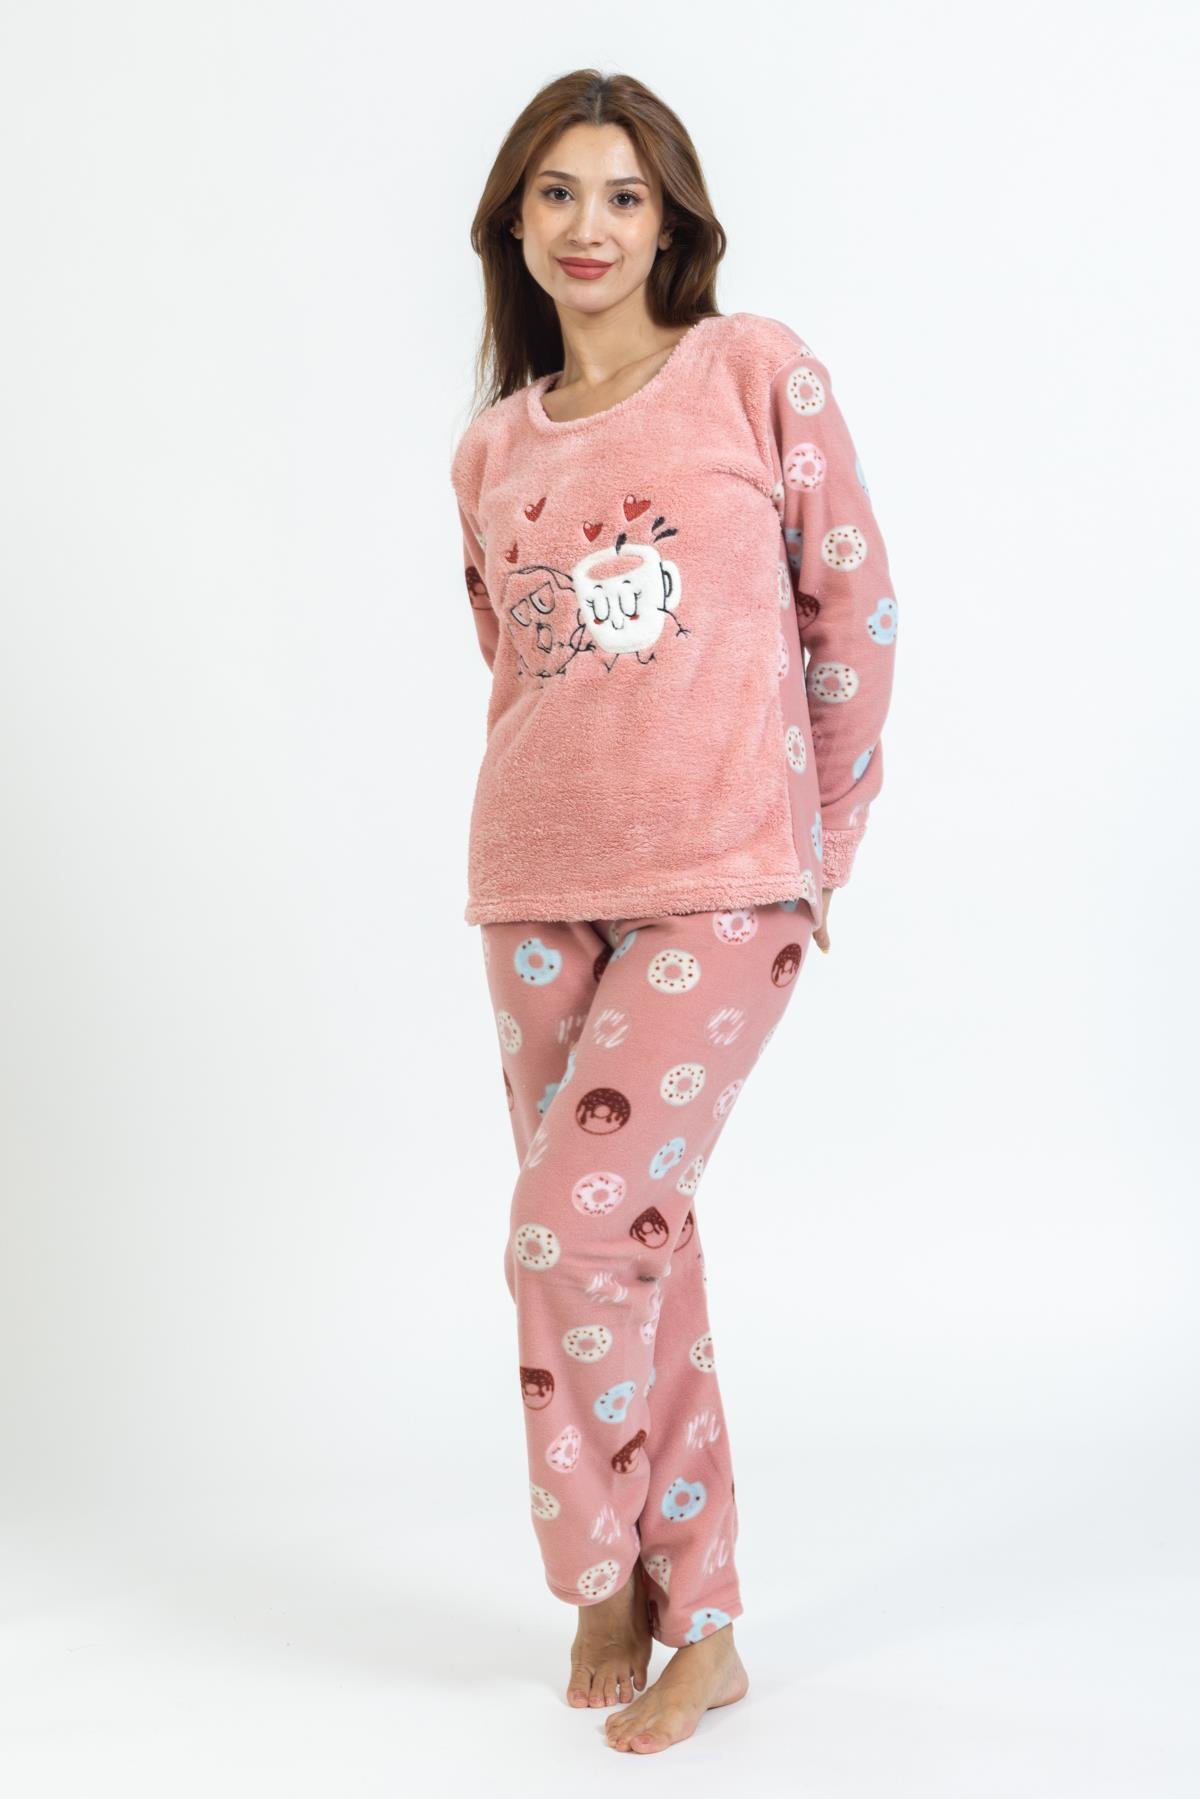 Kadın Donet Desenli Polar Pijama Takımı PEMBE